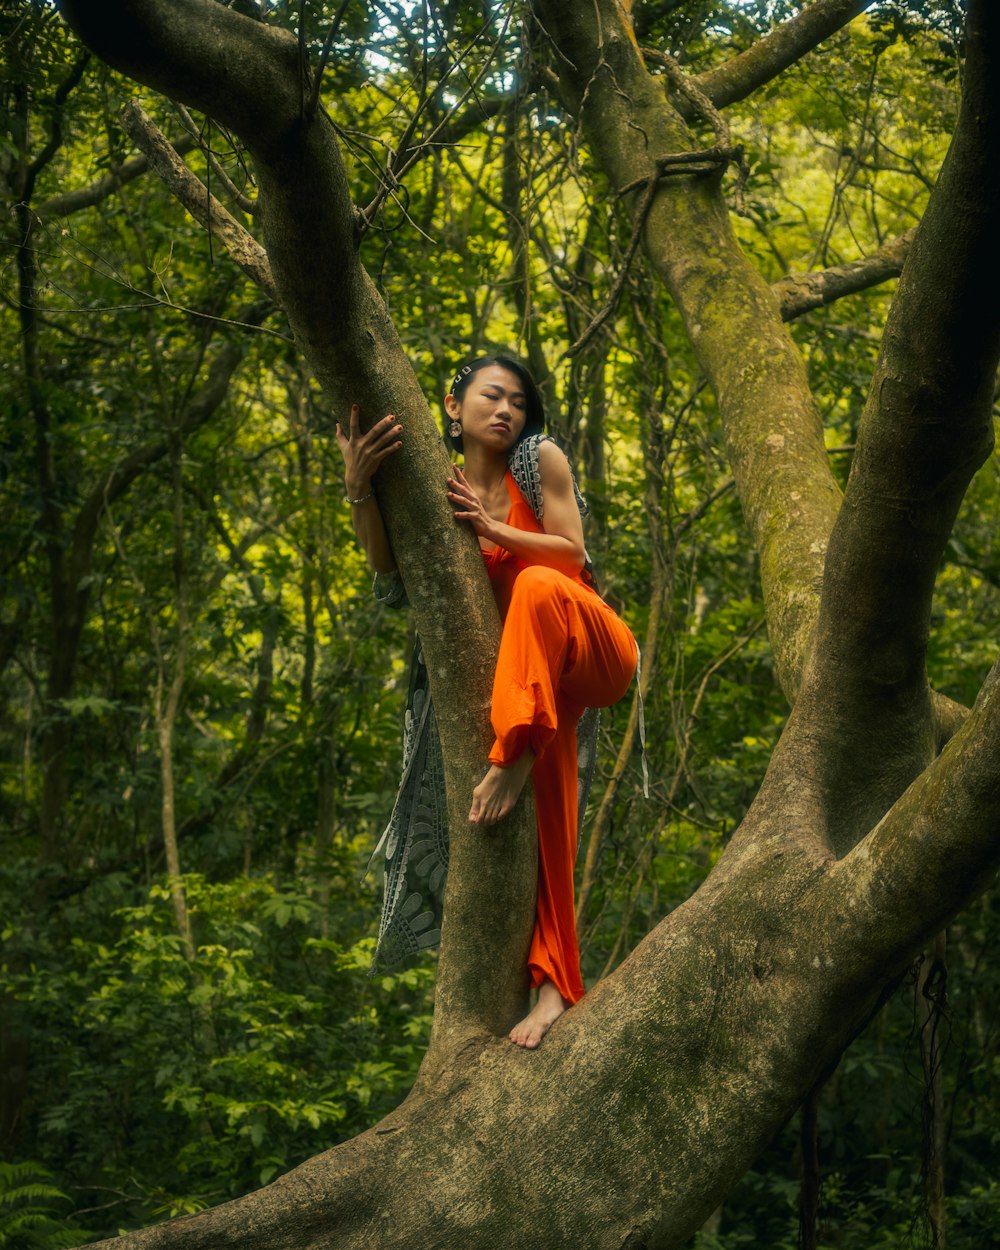 オレンジ色のドレスを着た女性が木に登る